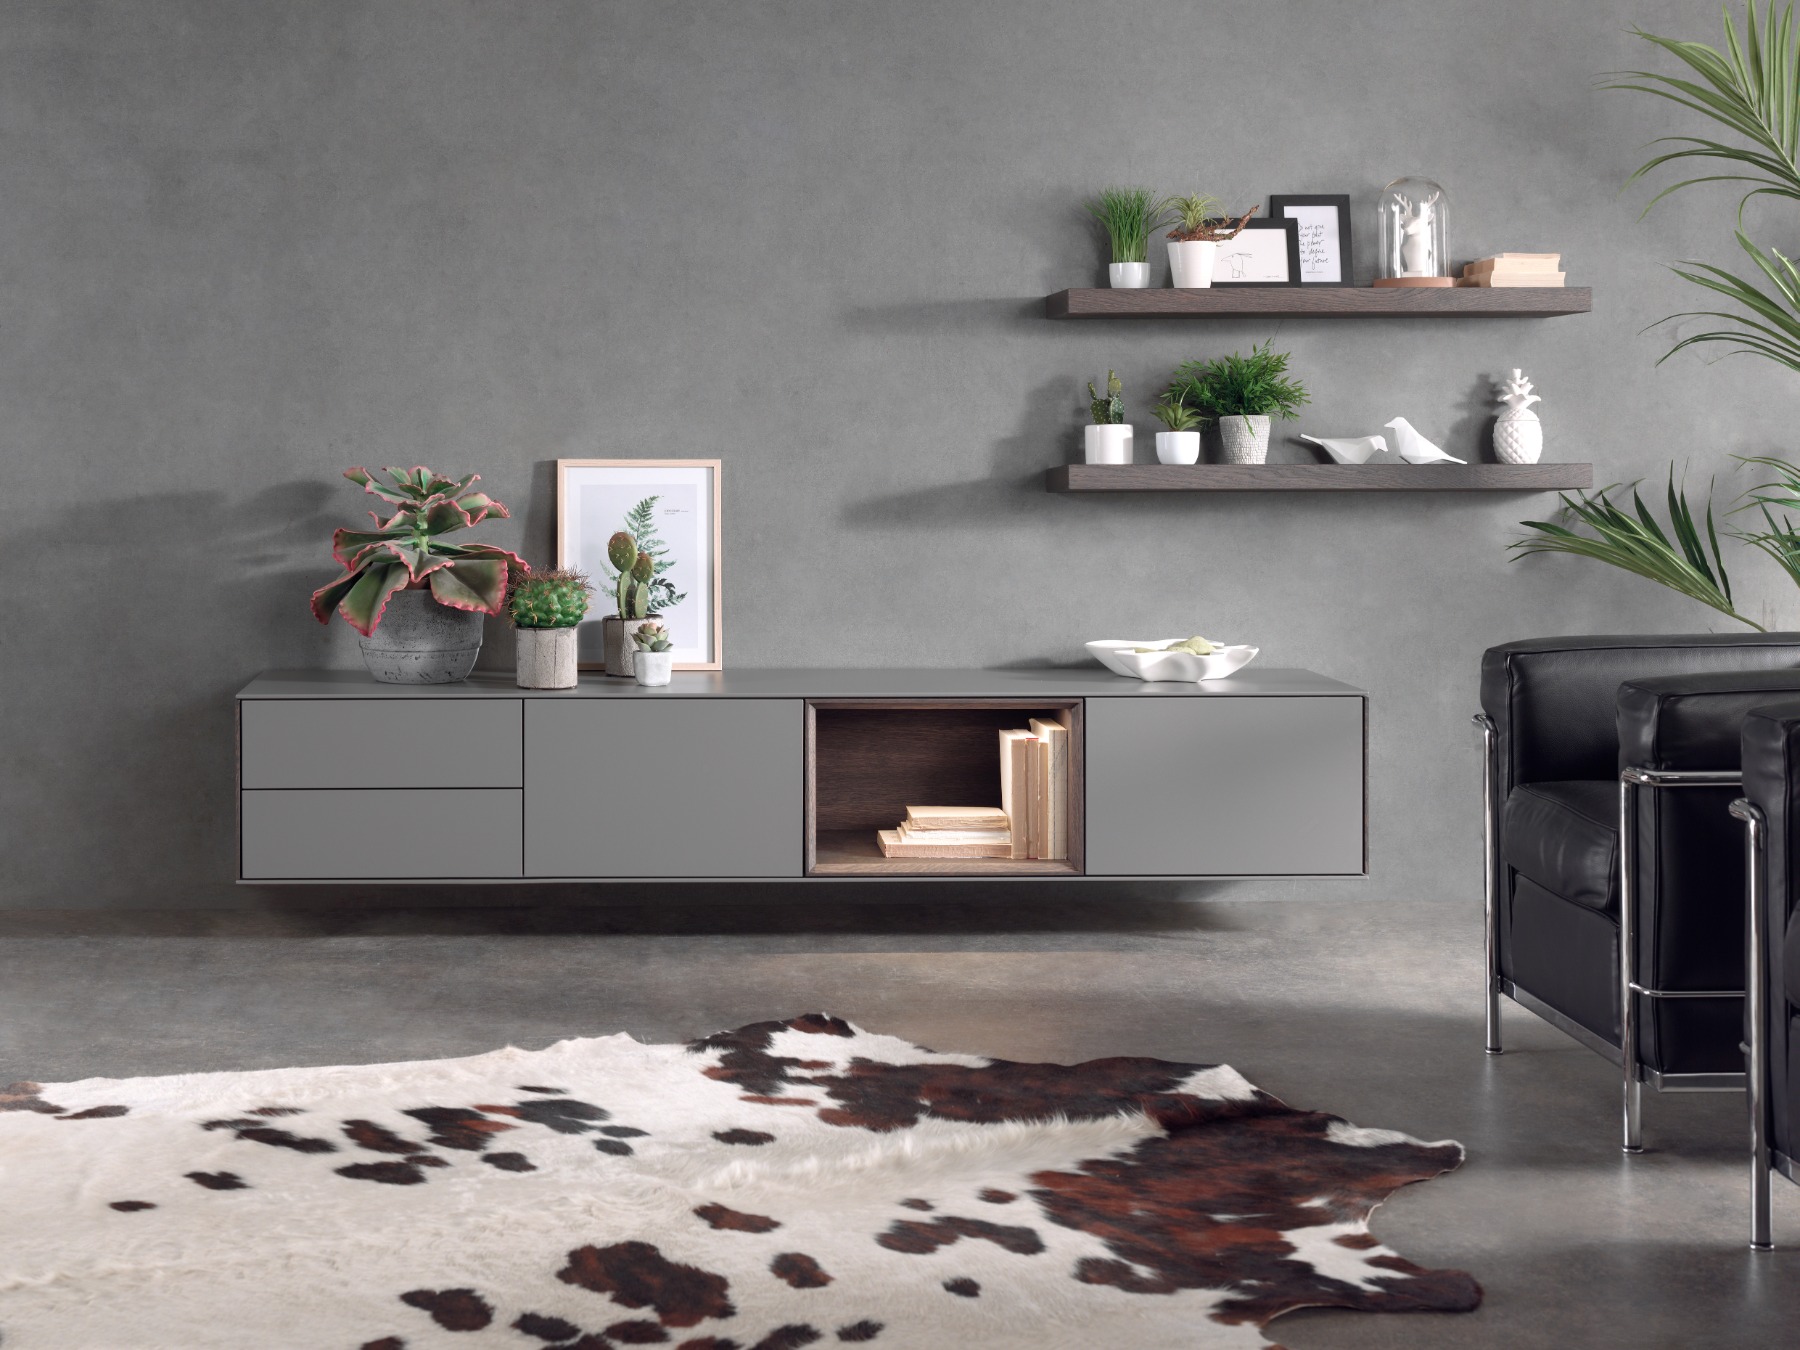 Foto: Design tv meubel van Saunaco bij Houweling Interieur klein